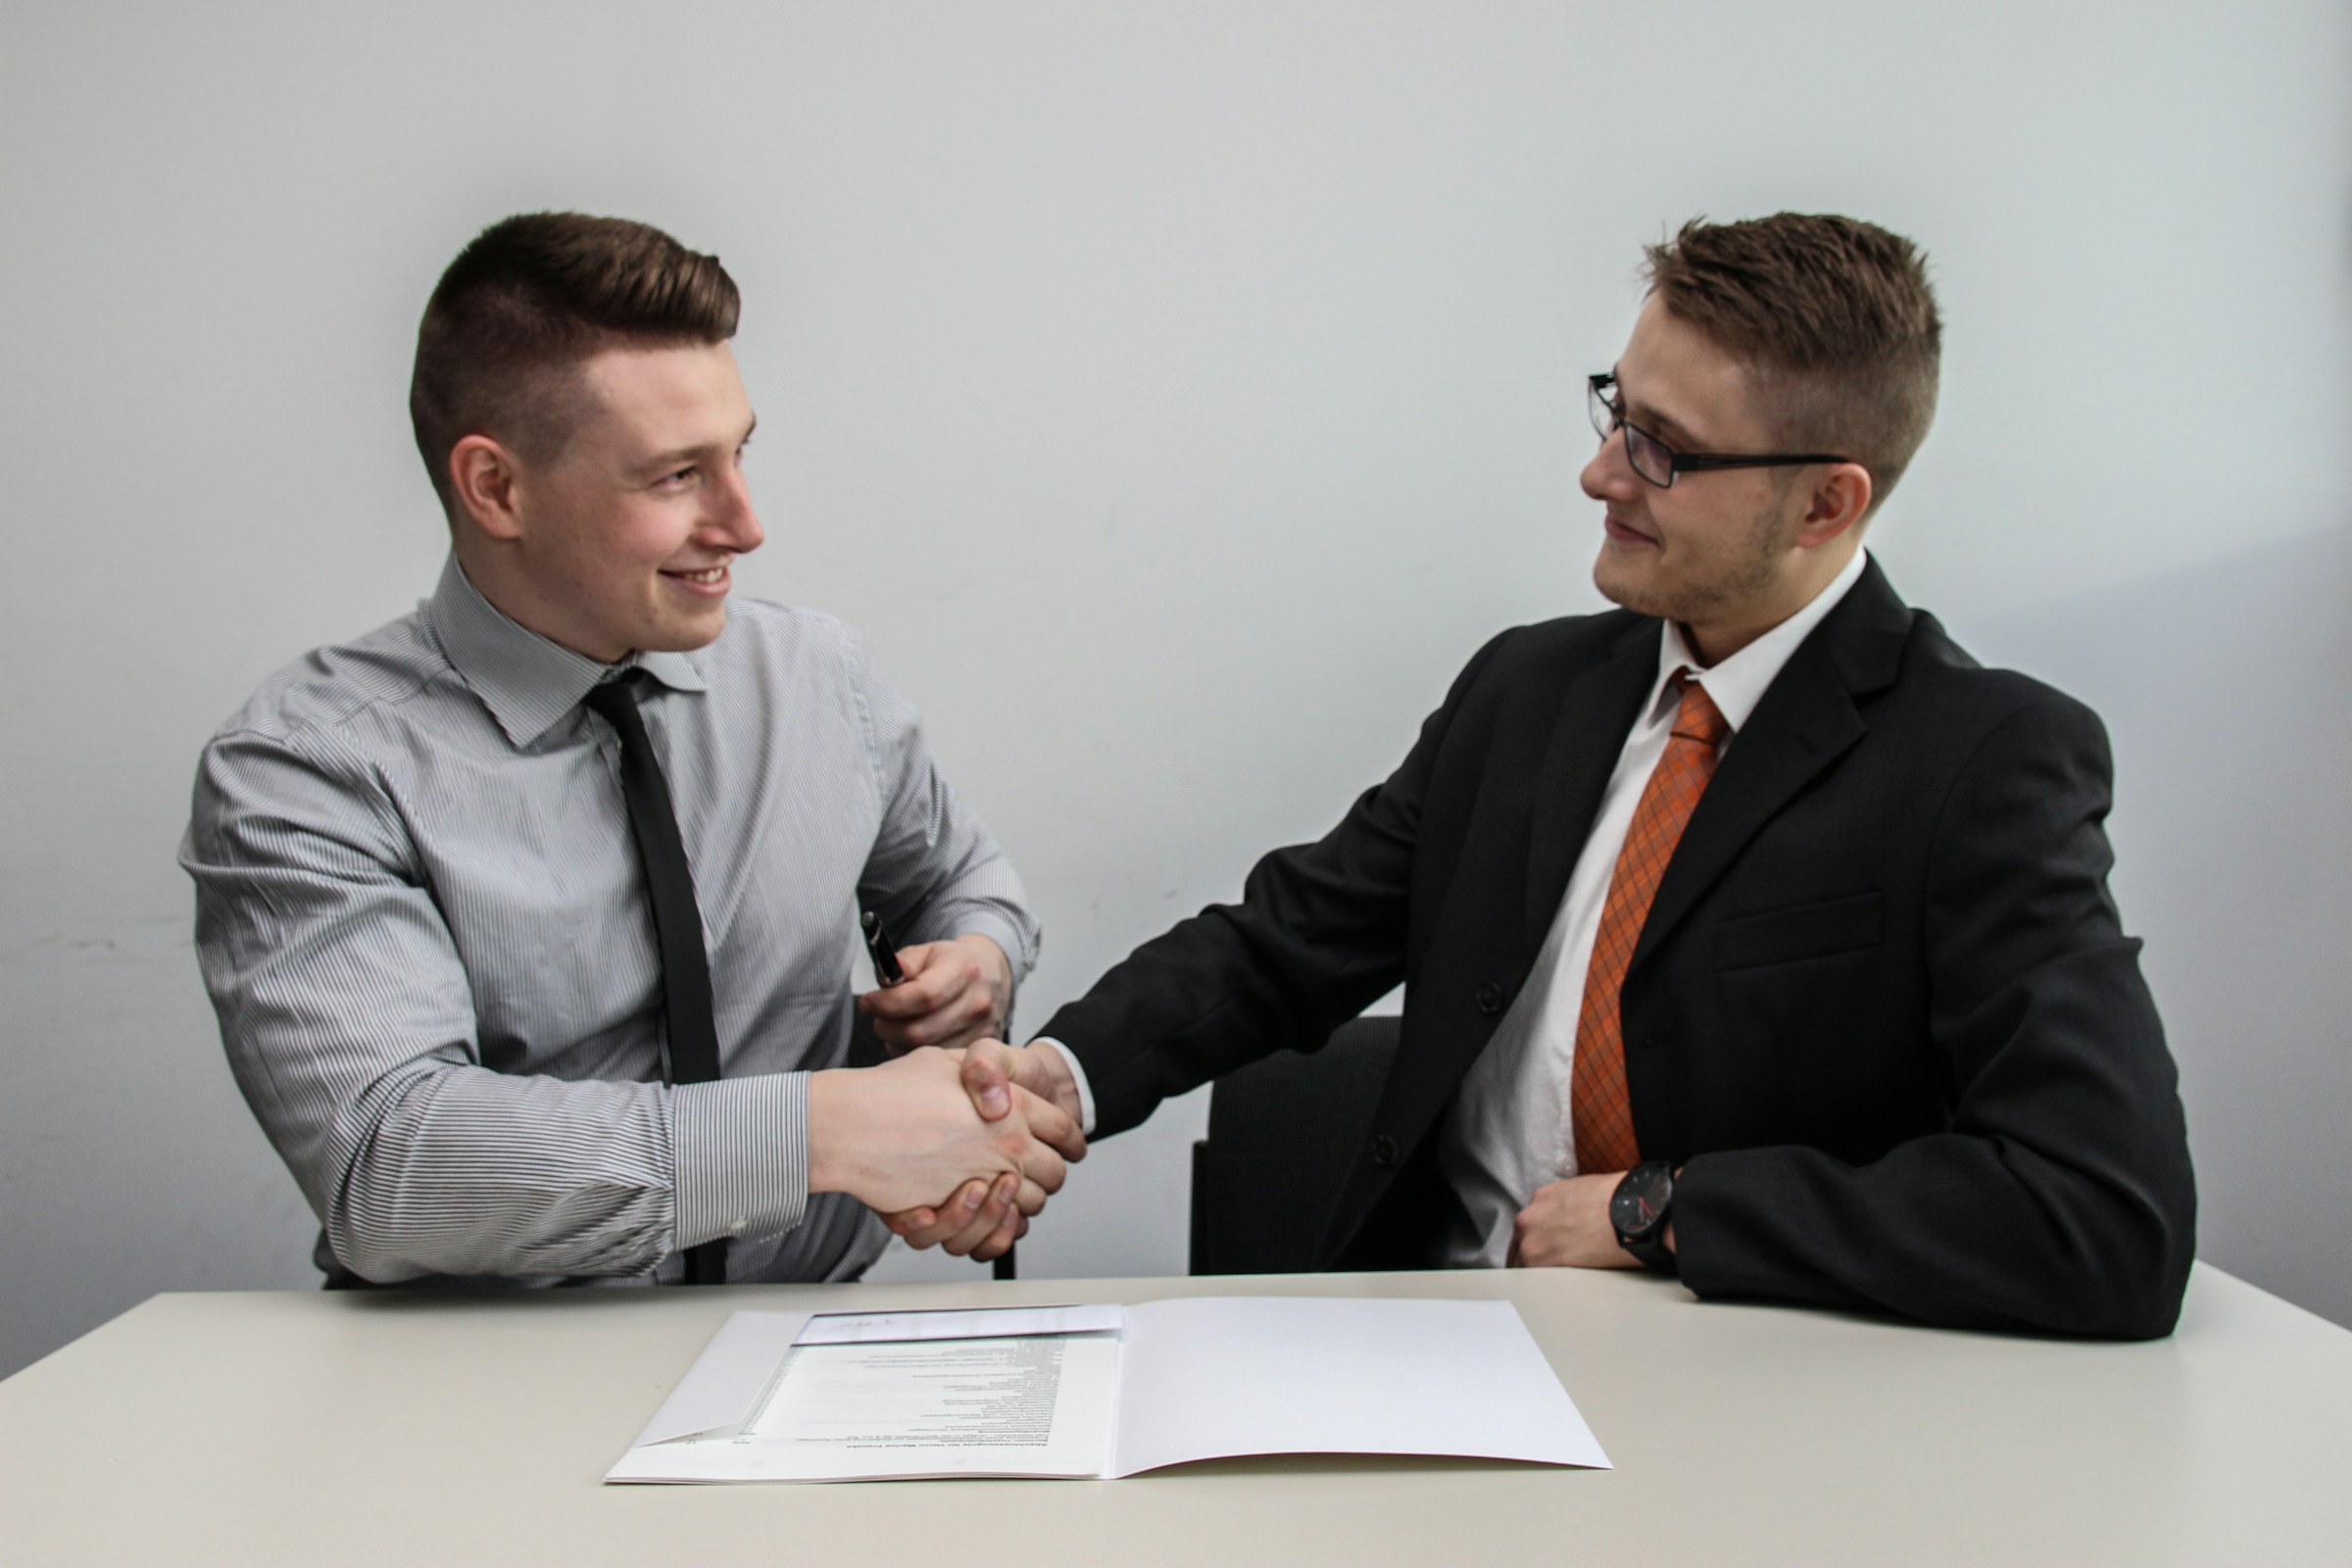 Foto de dois homens vestidos socialmente se cumprimentando em um aperto de mãos, ilustrando o artigo "como funciona o crédito consignado"